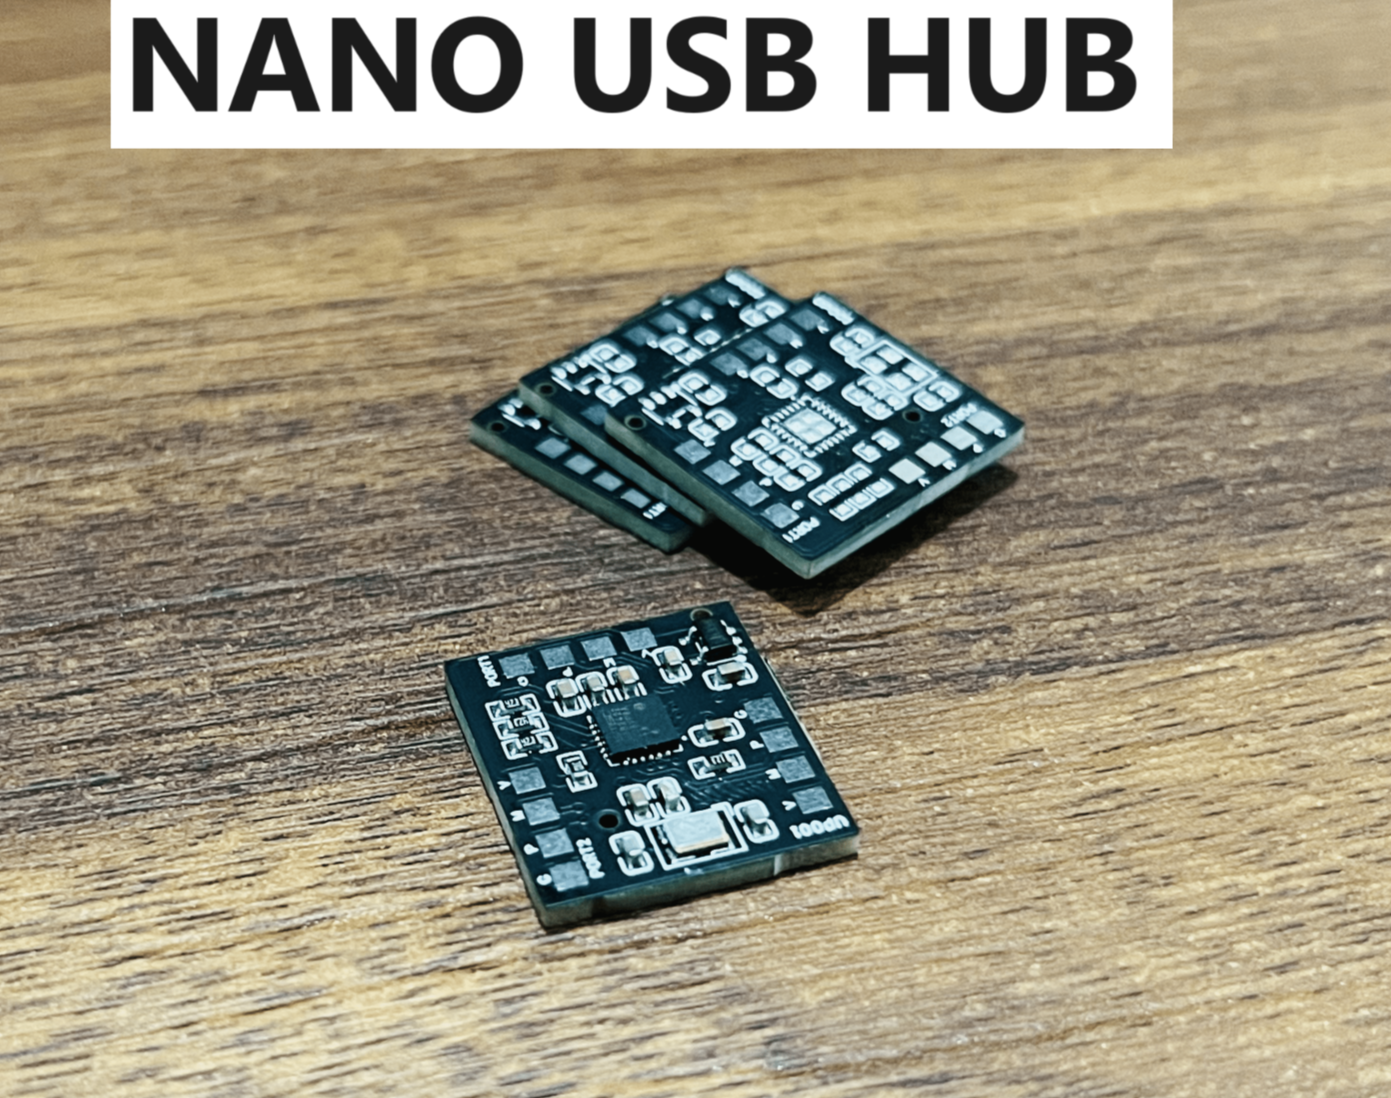 I Made a Nano USB HUB